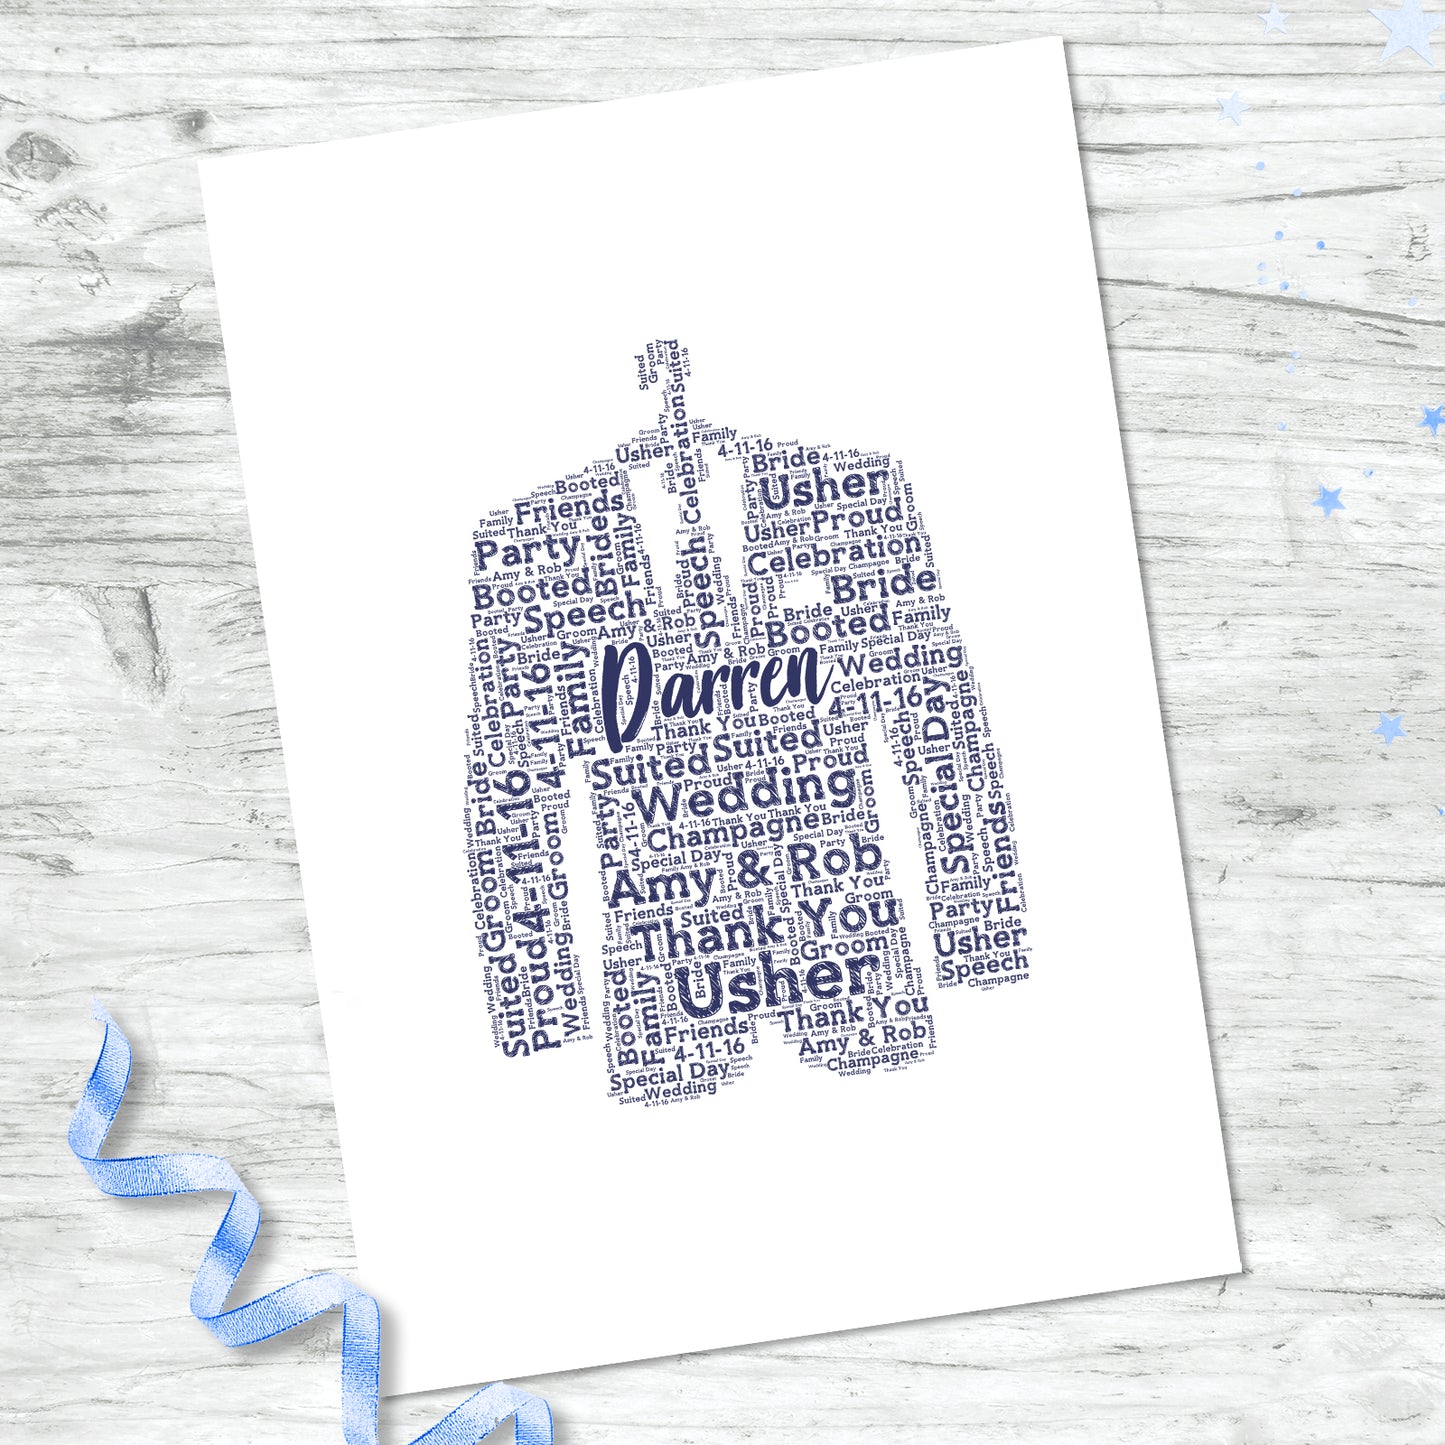 Personalised Best Man Suit Word Art Print